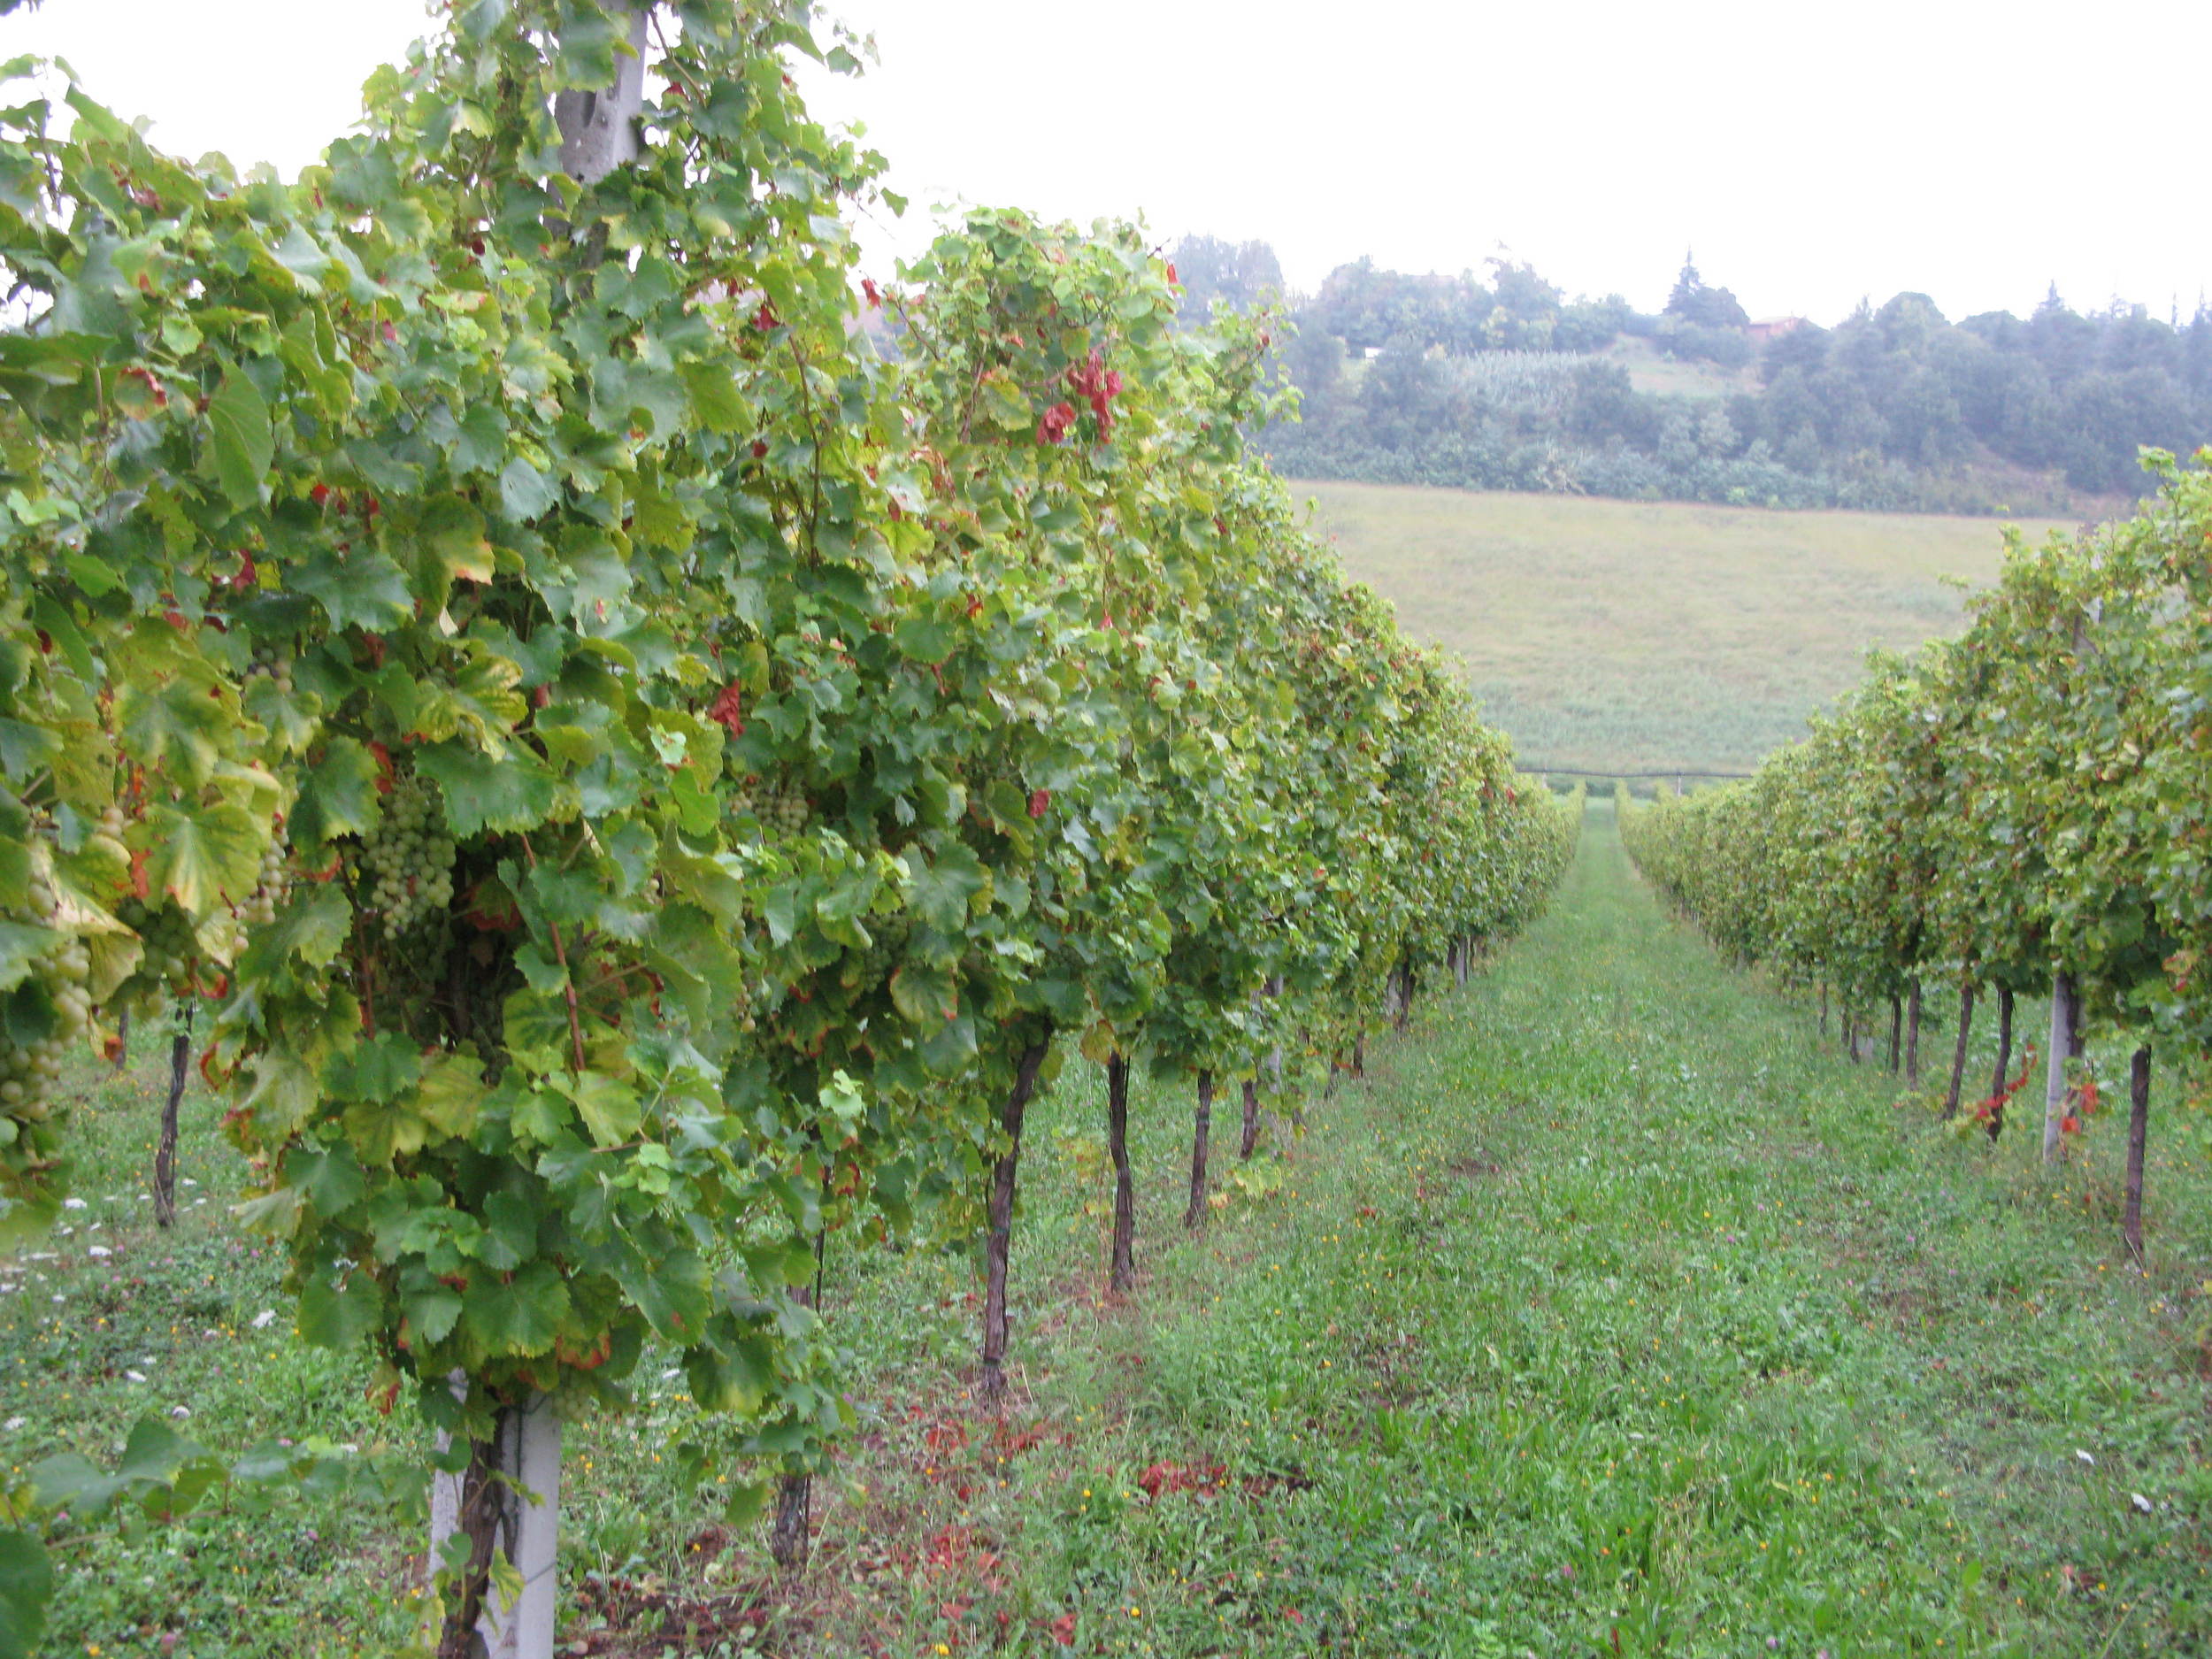 In the Ancarani vineyard